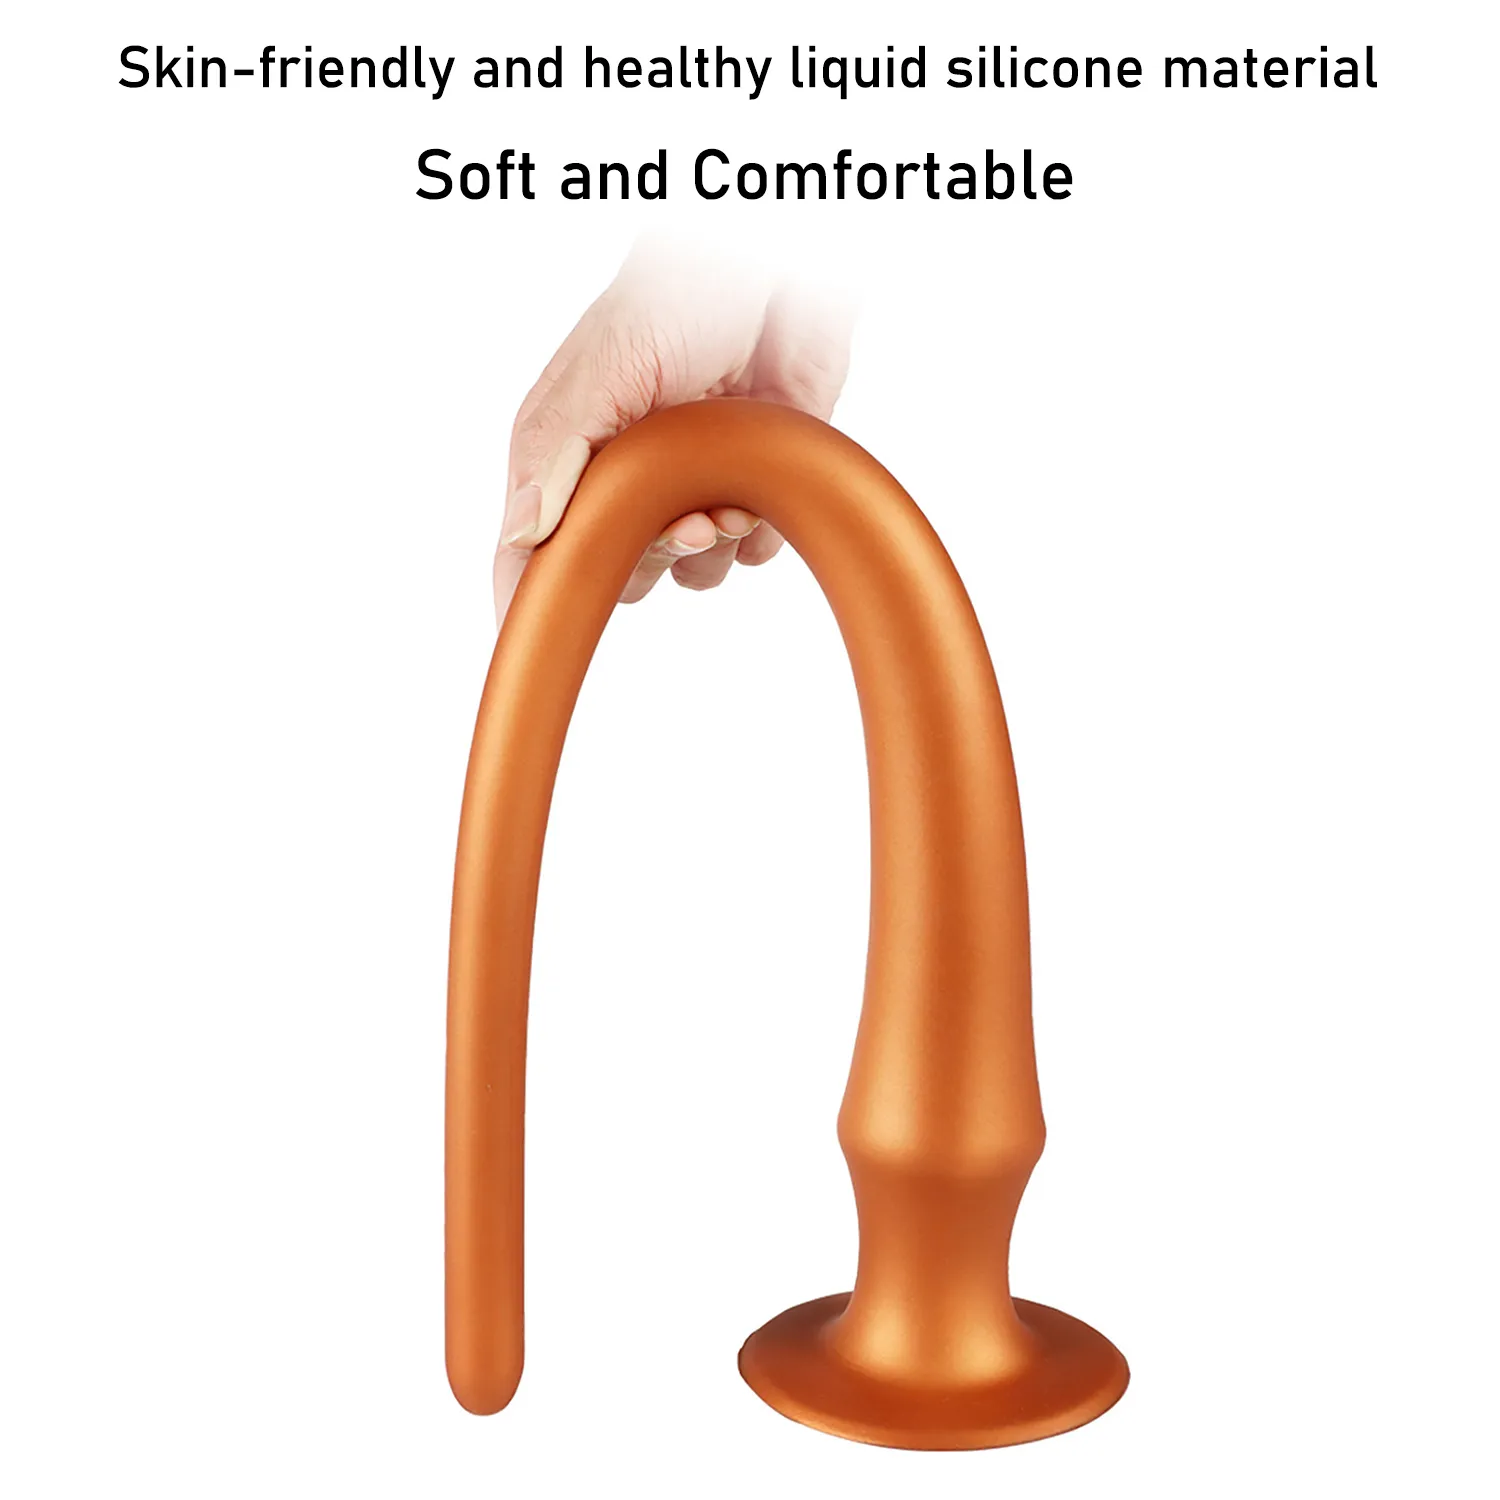 액체 실리콘 슈퍼 긴 항문 플러그 딜도는 여성을위한 항문 및 질 부드러운 확장기 섹시한 장난감 엉덩이를 자극합니다.